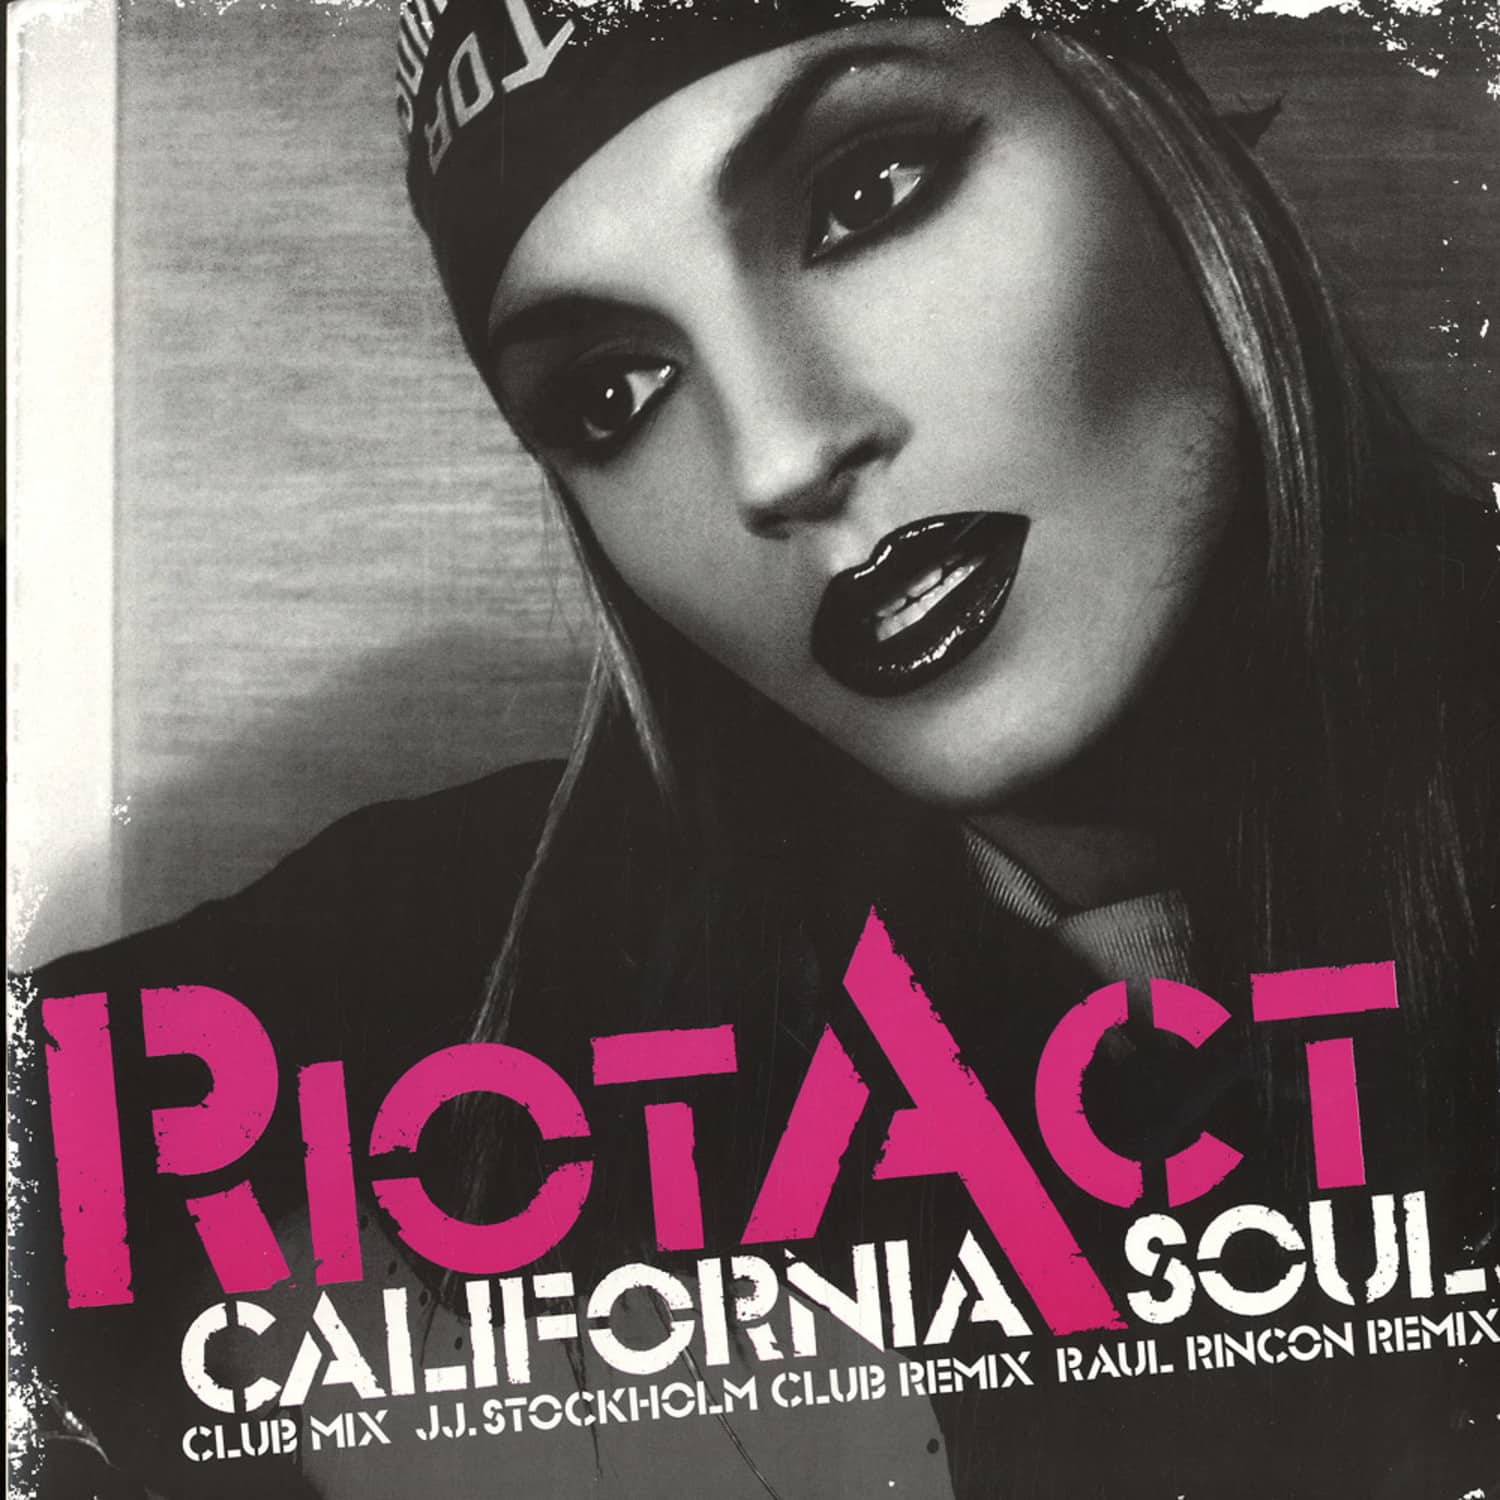 Riot Act - CALIFORNIAN SOUL